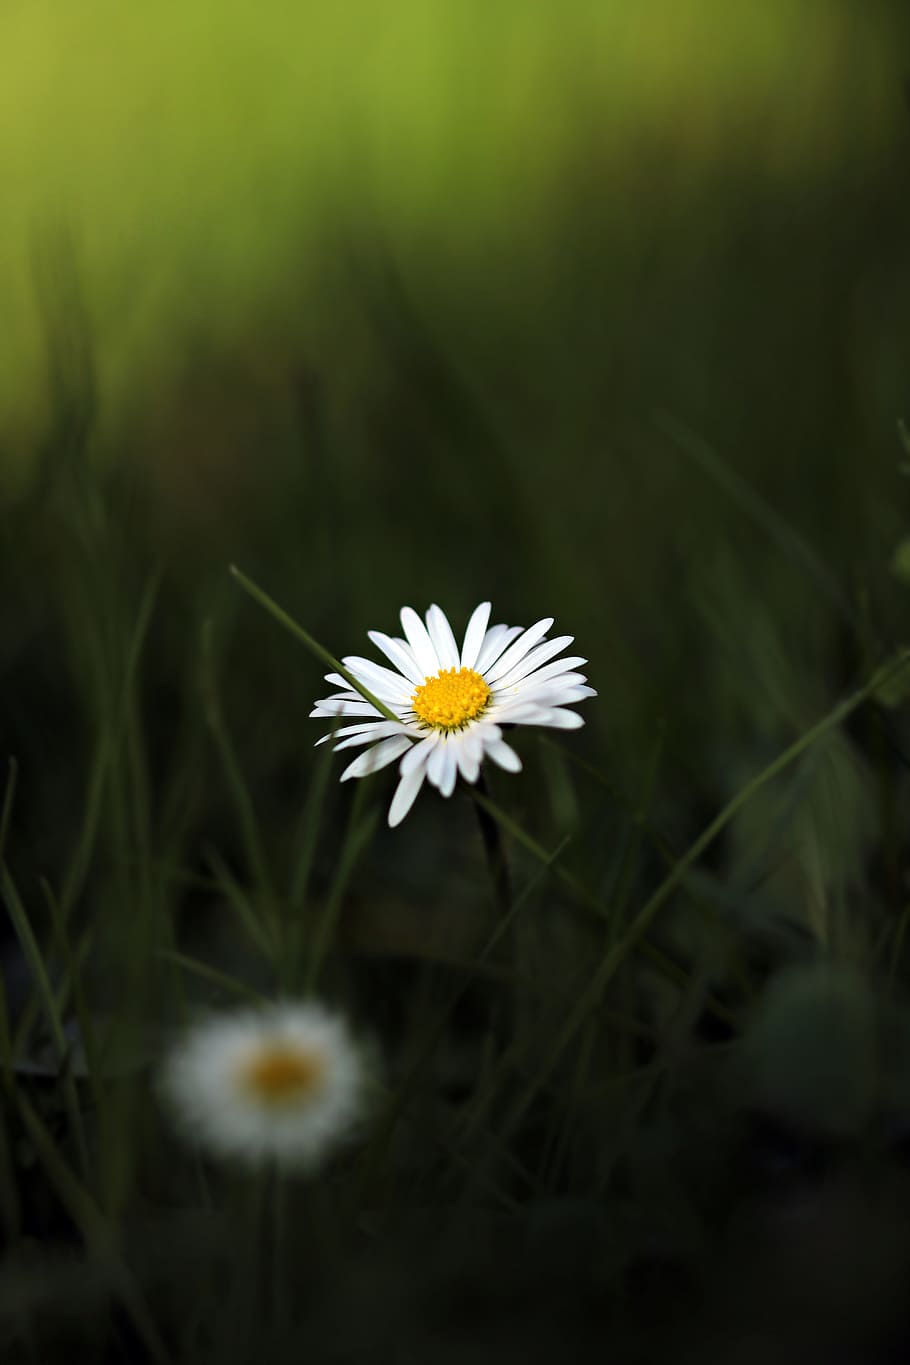 tutup, fotografi, putih, bunga petaled, siang hari, fotografi close up, bunga, daisy, bunga runcing, padang rumput